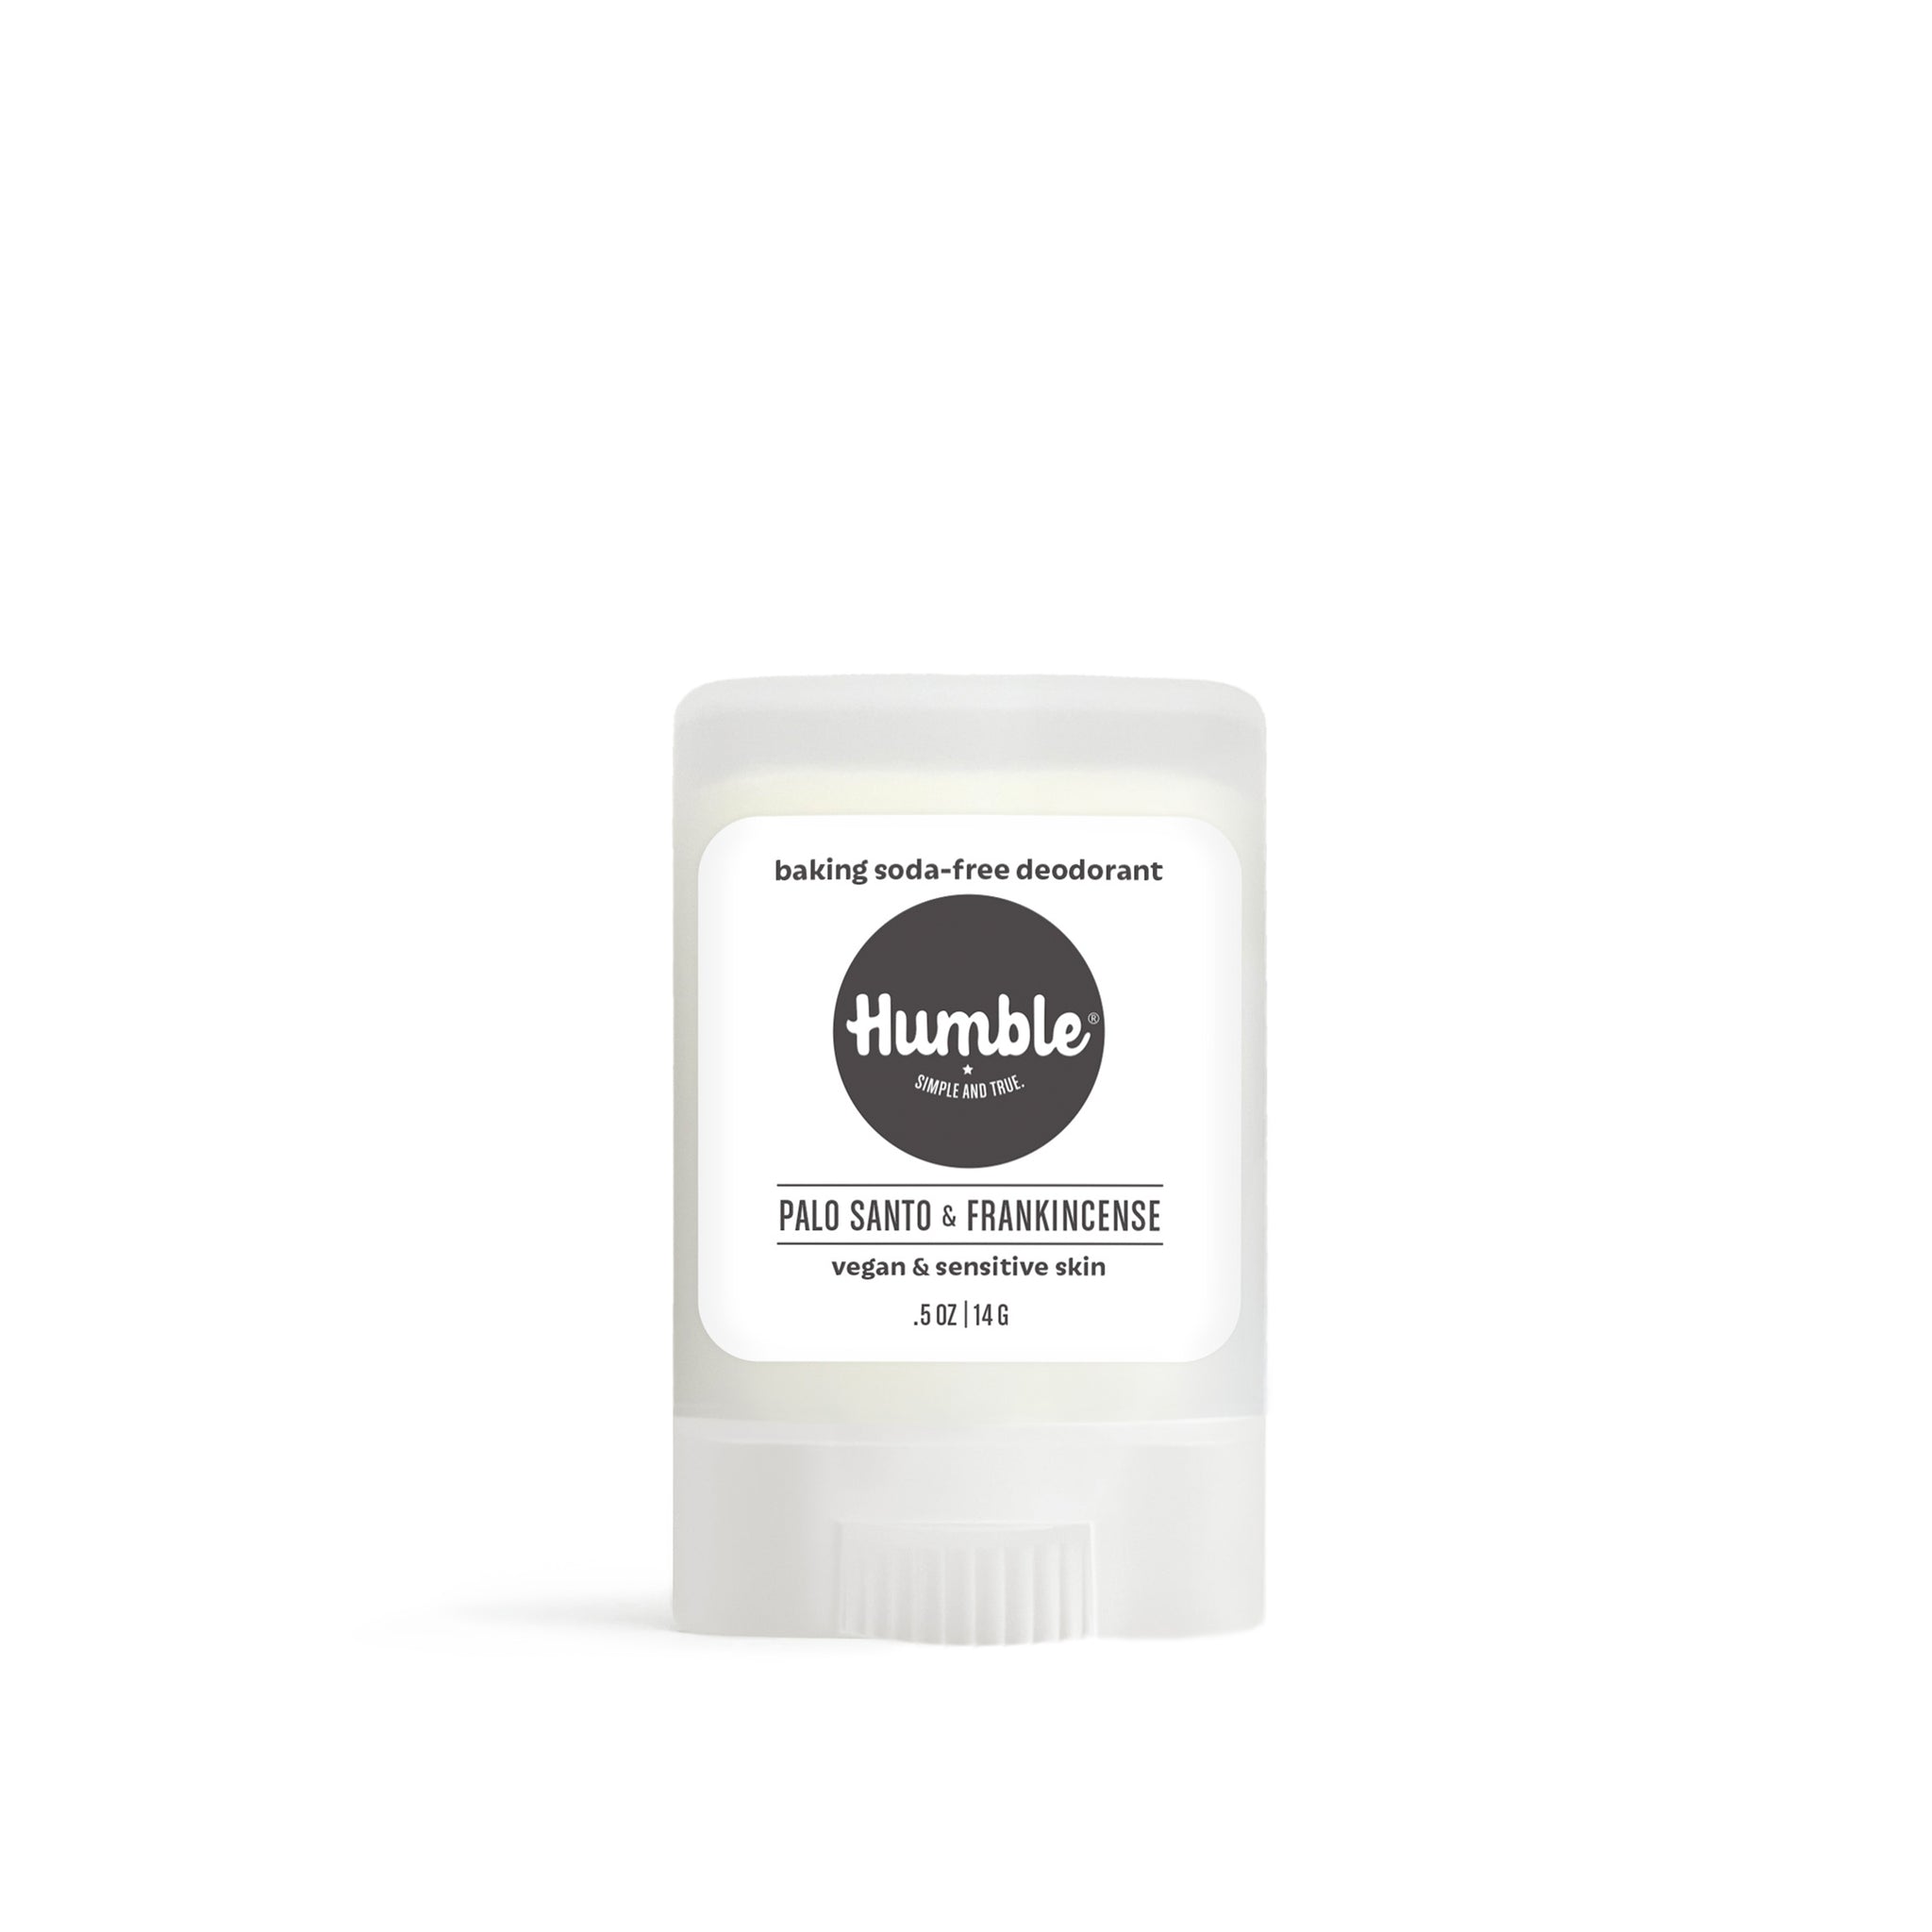 Palo Santo & Frankincense Vegan & Sensitive Skin Natural Deodorant 14g